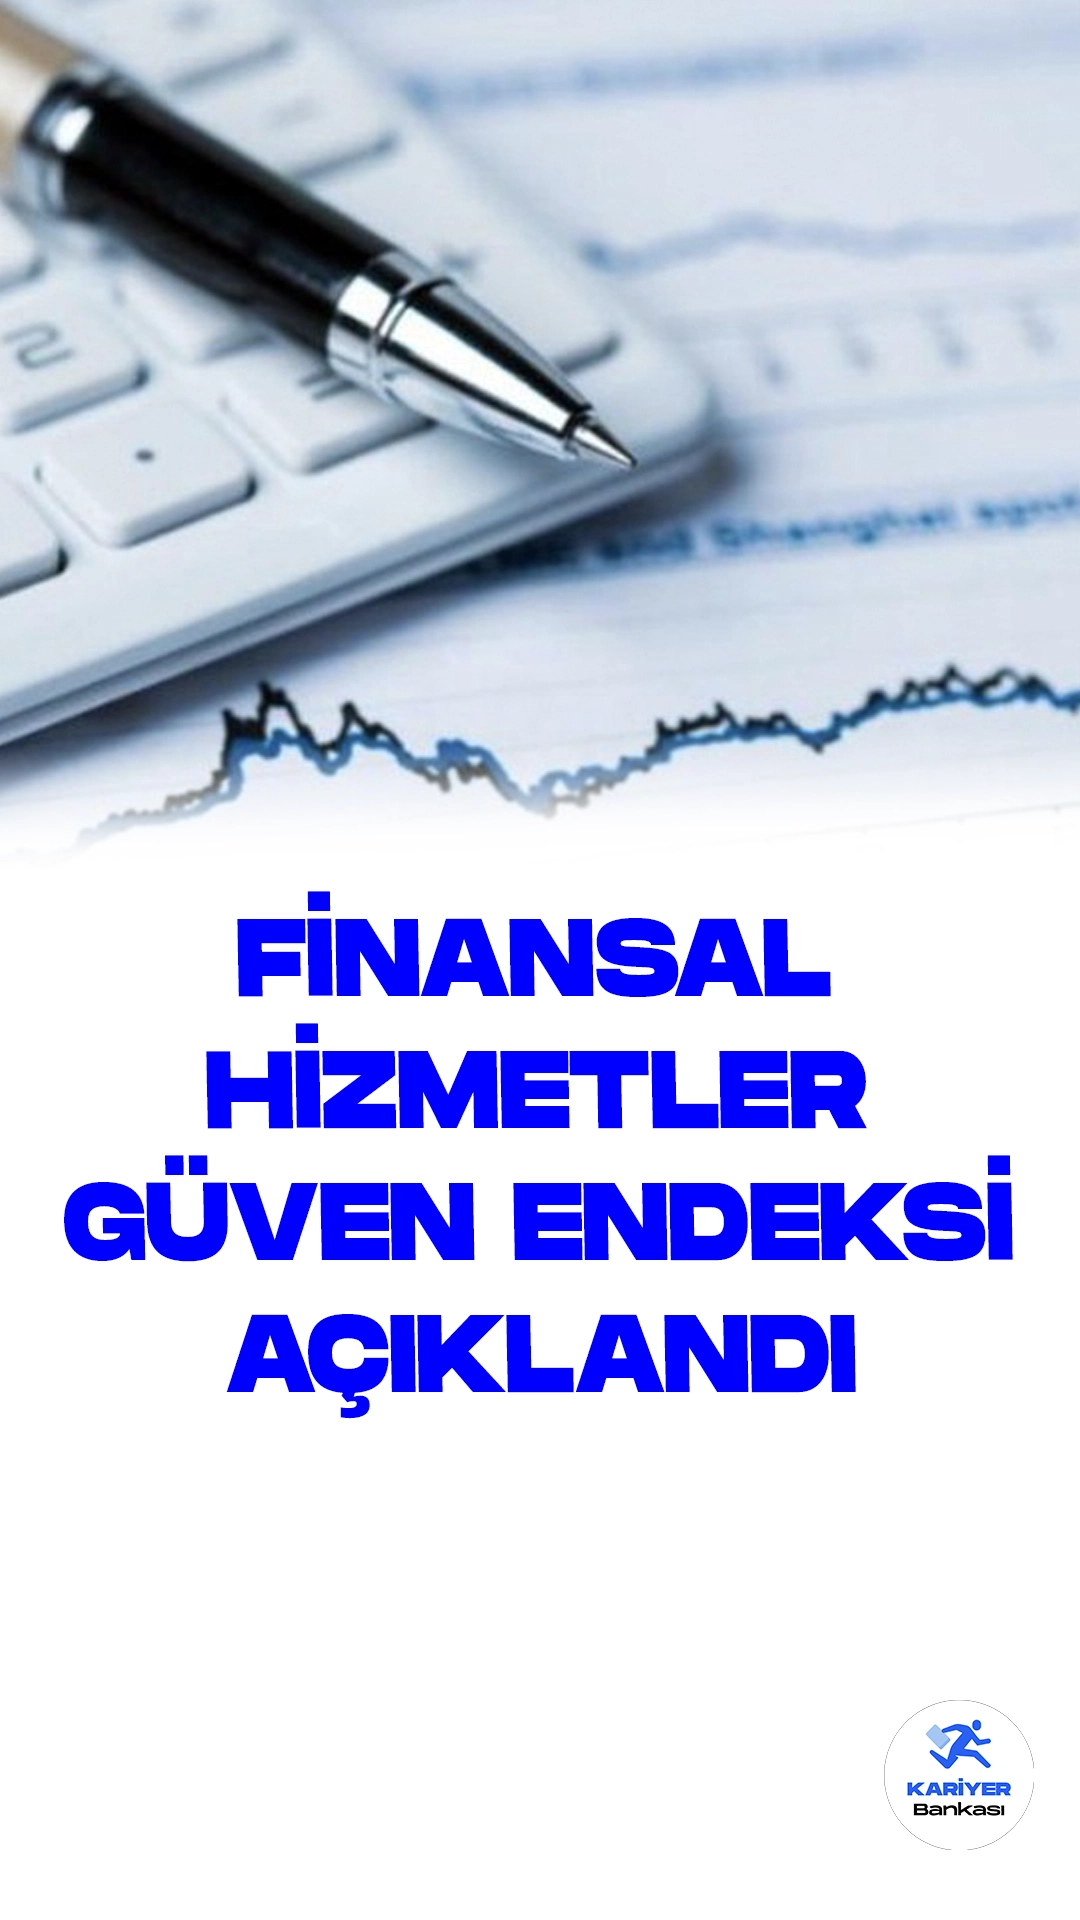 Finansal Hizmetler Güven Endeksi Açıklandı.Türkiye Cumhuriyet Merkez Bankası (TCMB) tarafından açıklanan ekim ayına ait Finansal Hizmetler İstatistikleri ve Finansal Hizmetler Güven Endeksi raporlarına göre, Finansal Hizmetler Güven Endeksi, ekimde bir önceki aya göre 15,7 puan azalarak 152,5 seviyesine indi. Bu önemli finansal gösterge, finansal sektörde faaliyet gösteren 143 kuruluşun yanıtlarının ağırlıklandırılmasıyla oluşturulan anket sonuçlarına dayanmaktadır.